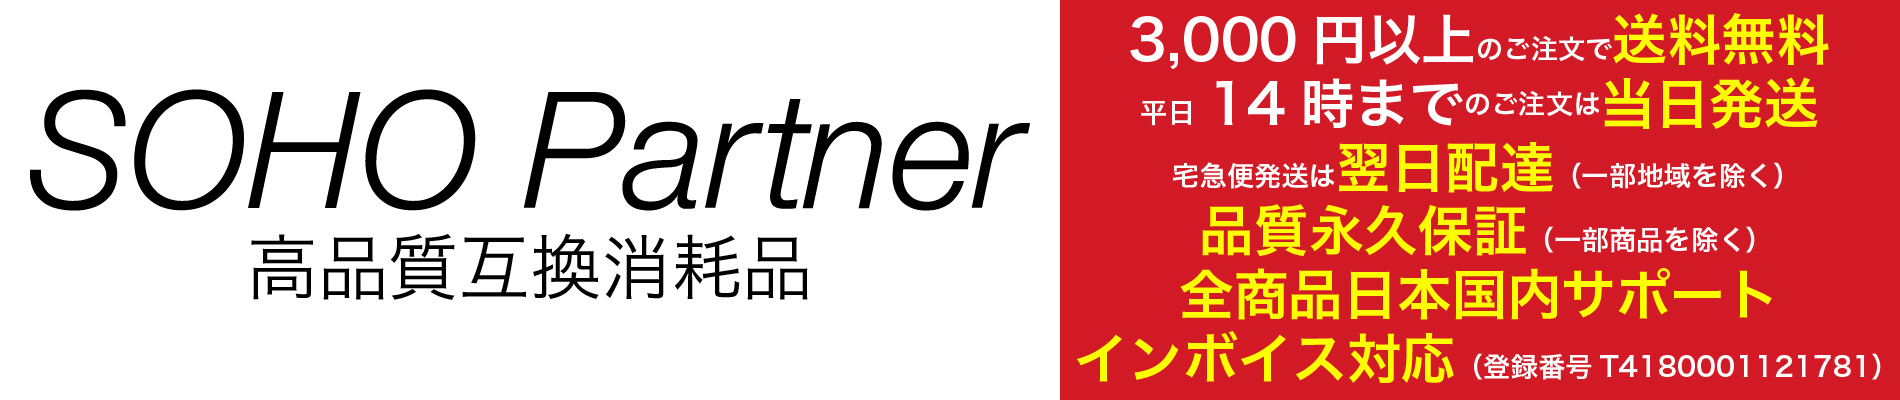 高品質互換消耗品 SOHO Partner：ラベルライター用テープカートリッジ/FAXりぼん/製本テープ/真空パック袋